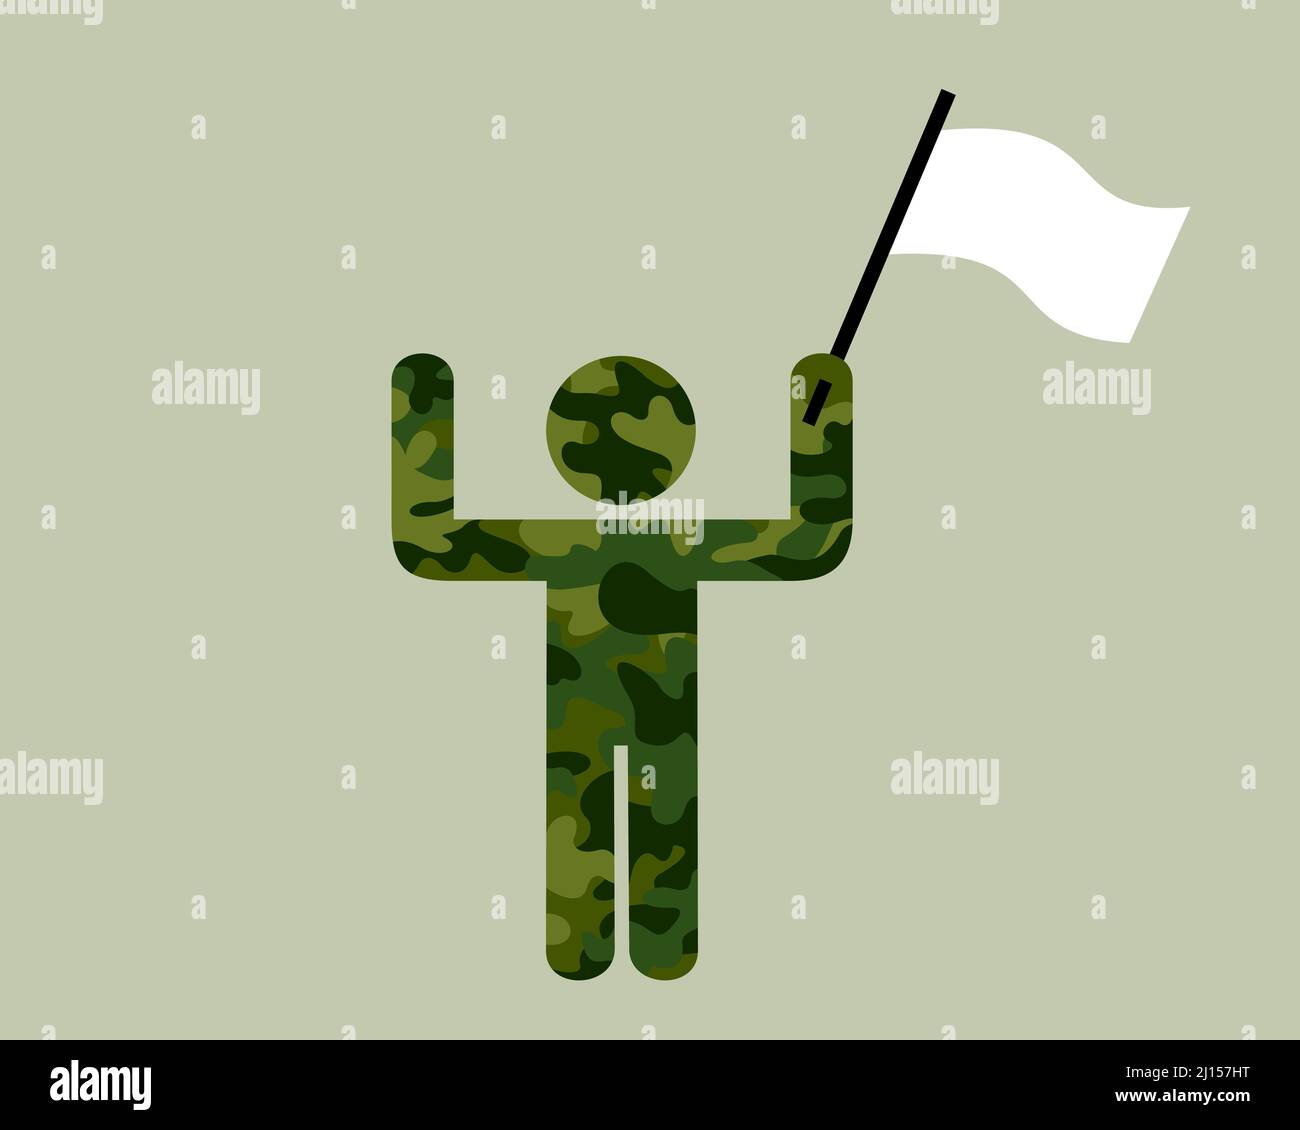 Rendición - Soldado, guerrero y combatiente está renunciando, rindiendo y capitulando después de ser derrotado. El hombre de color verde caqui sostiene la bandera blanca. Foto de stock